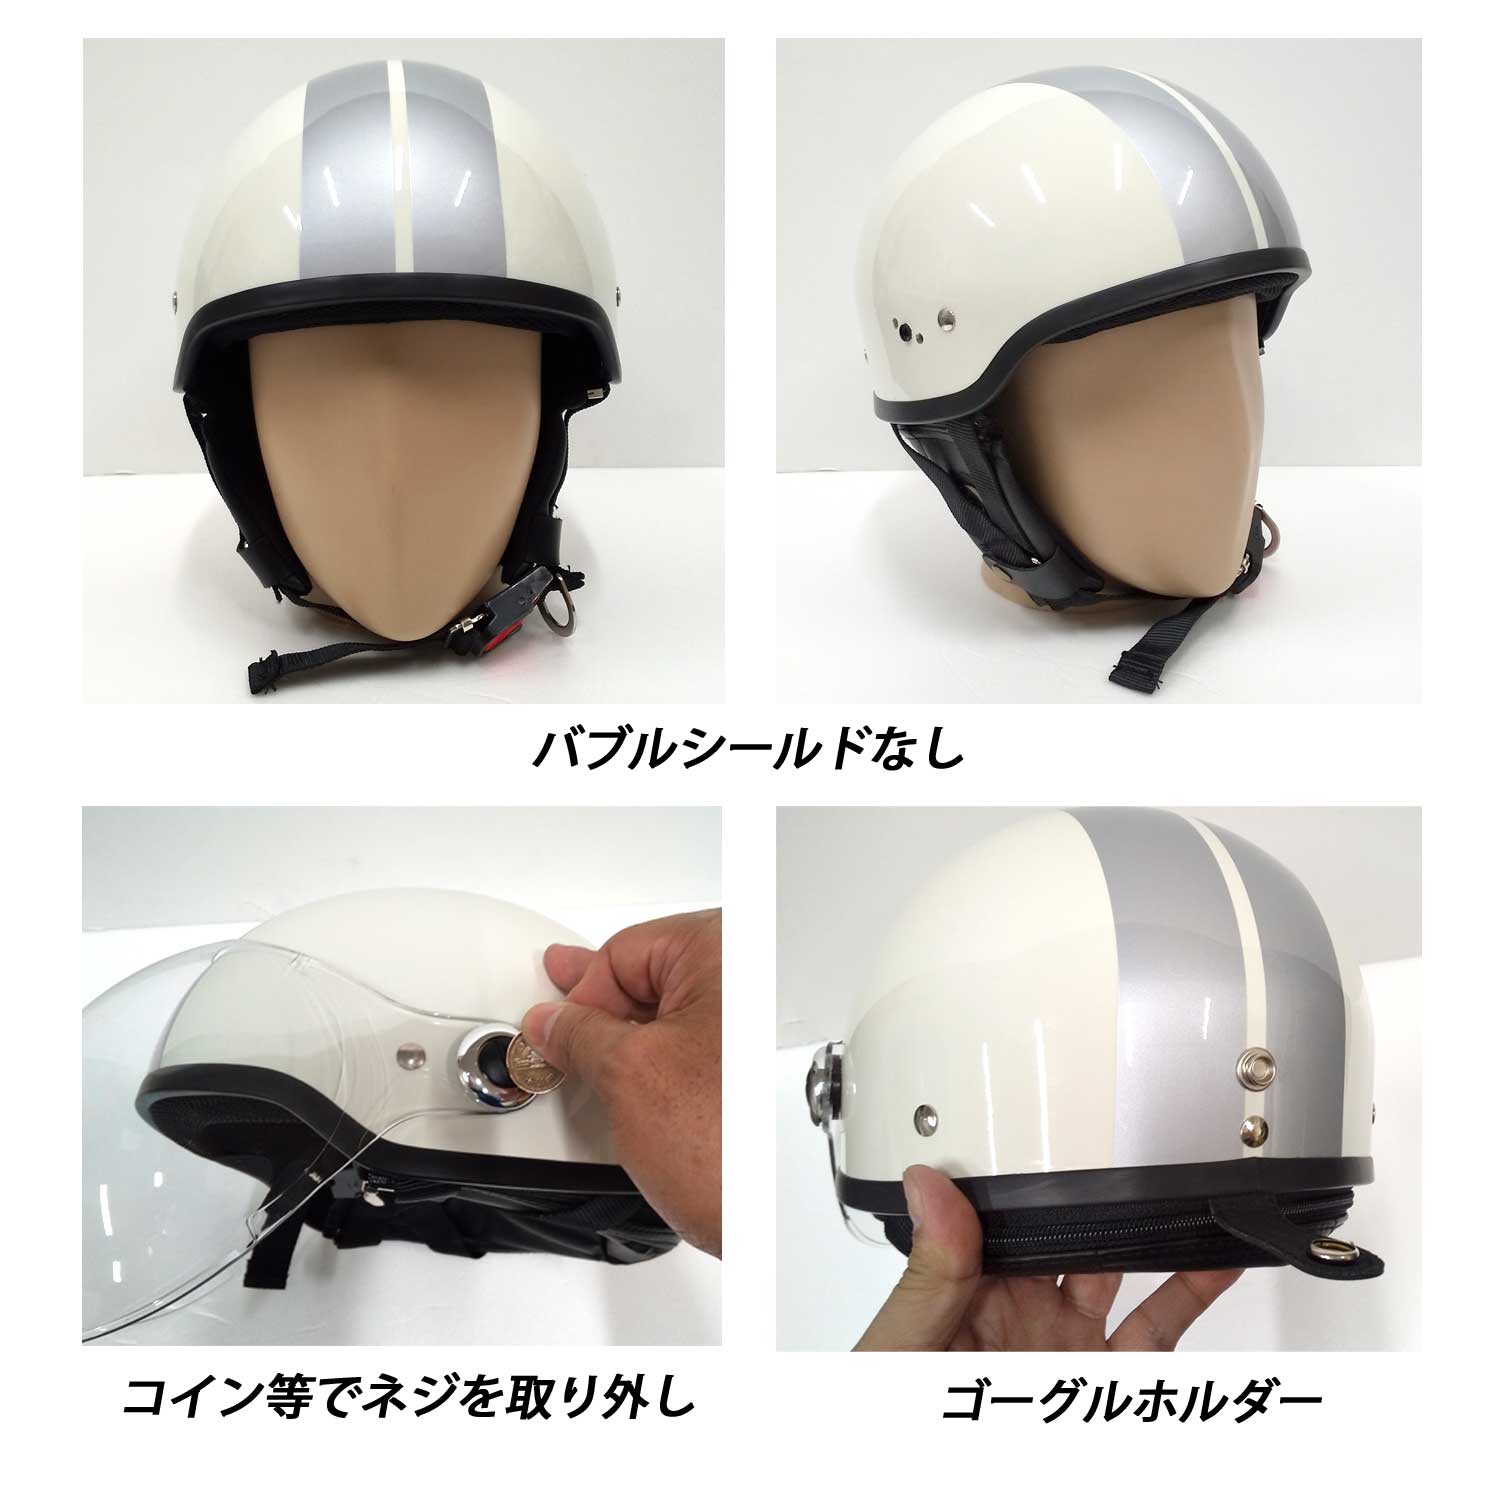 バイクヘルメット ブラック レッド バブルシールド  ポリスヘルメット ストリートハーフ 半帽ヘルメット SG規格適合 PSCマーク付  バイク ヘルメット